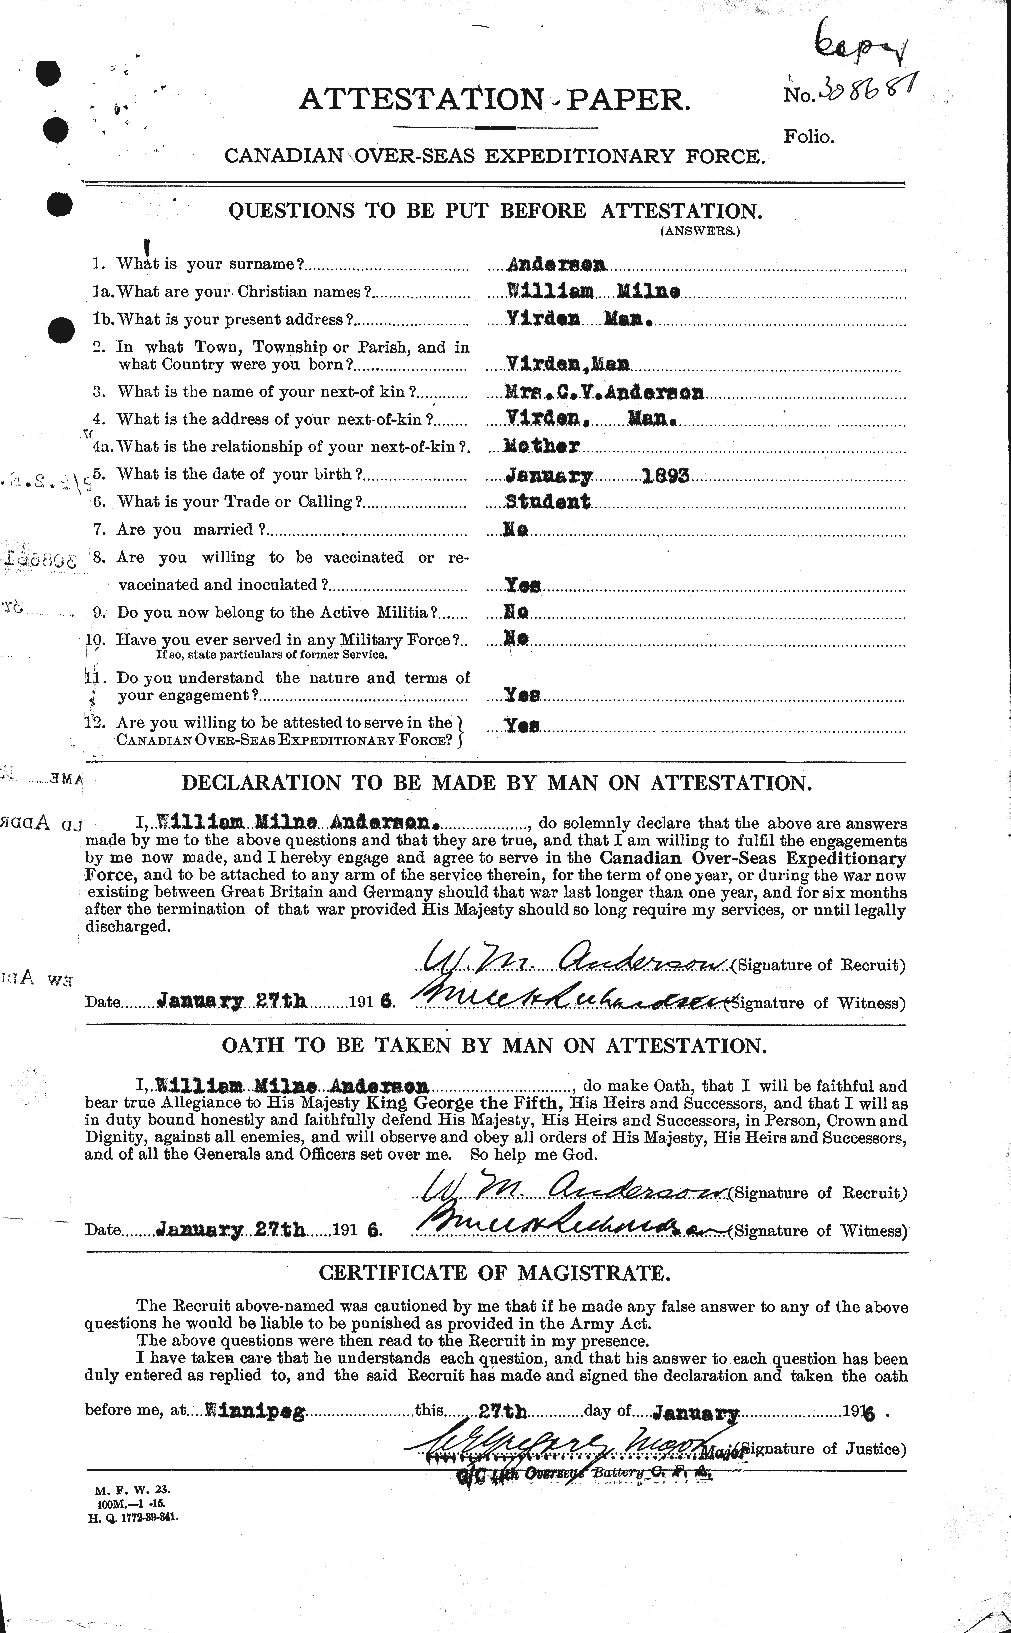 Dossiers du Personnel de la Première Guerre mondiale - CEC 210681a